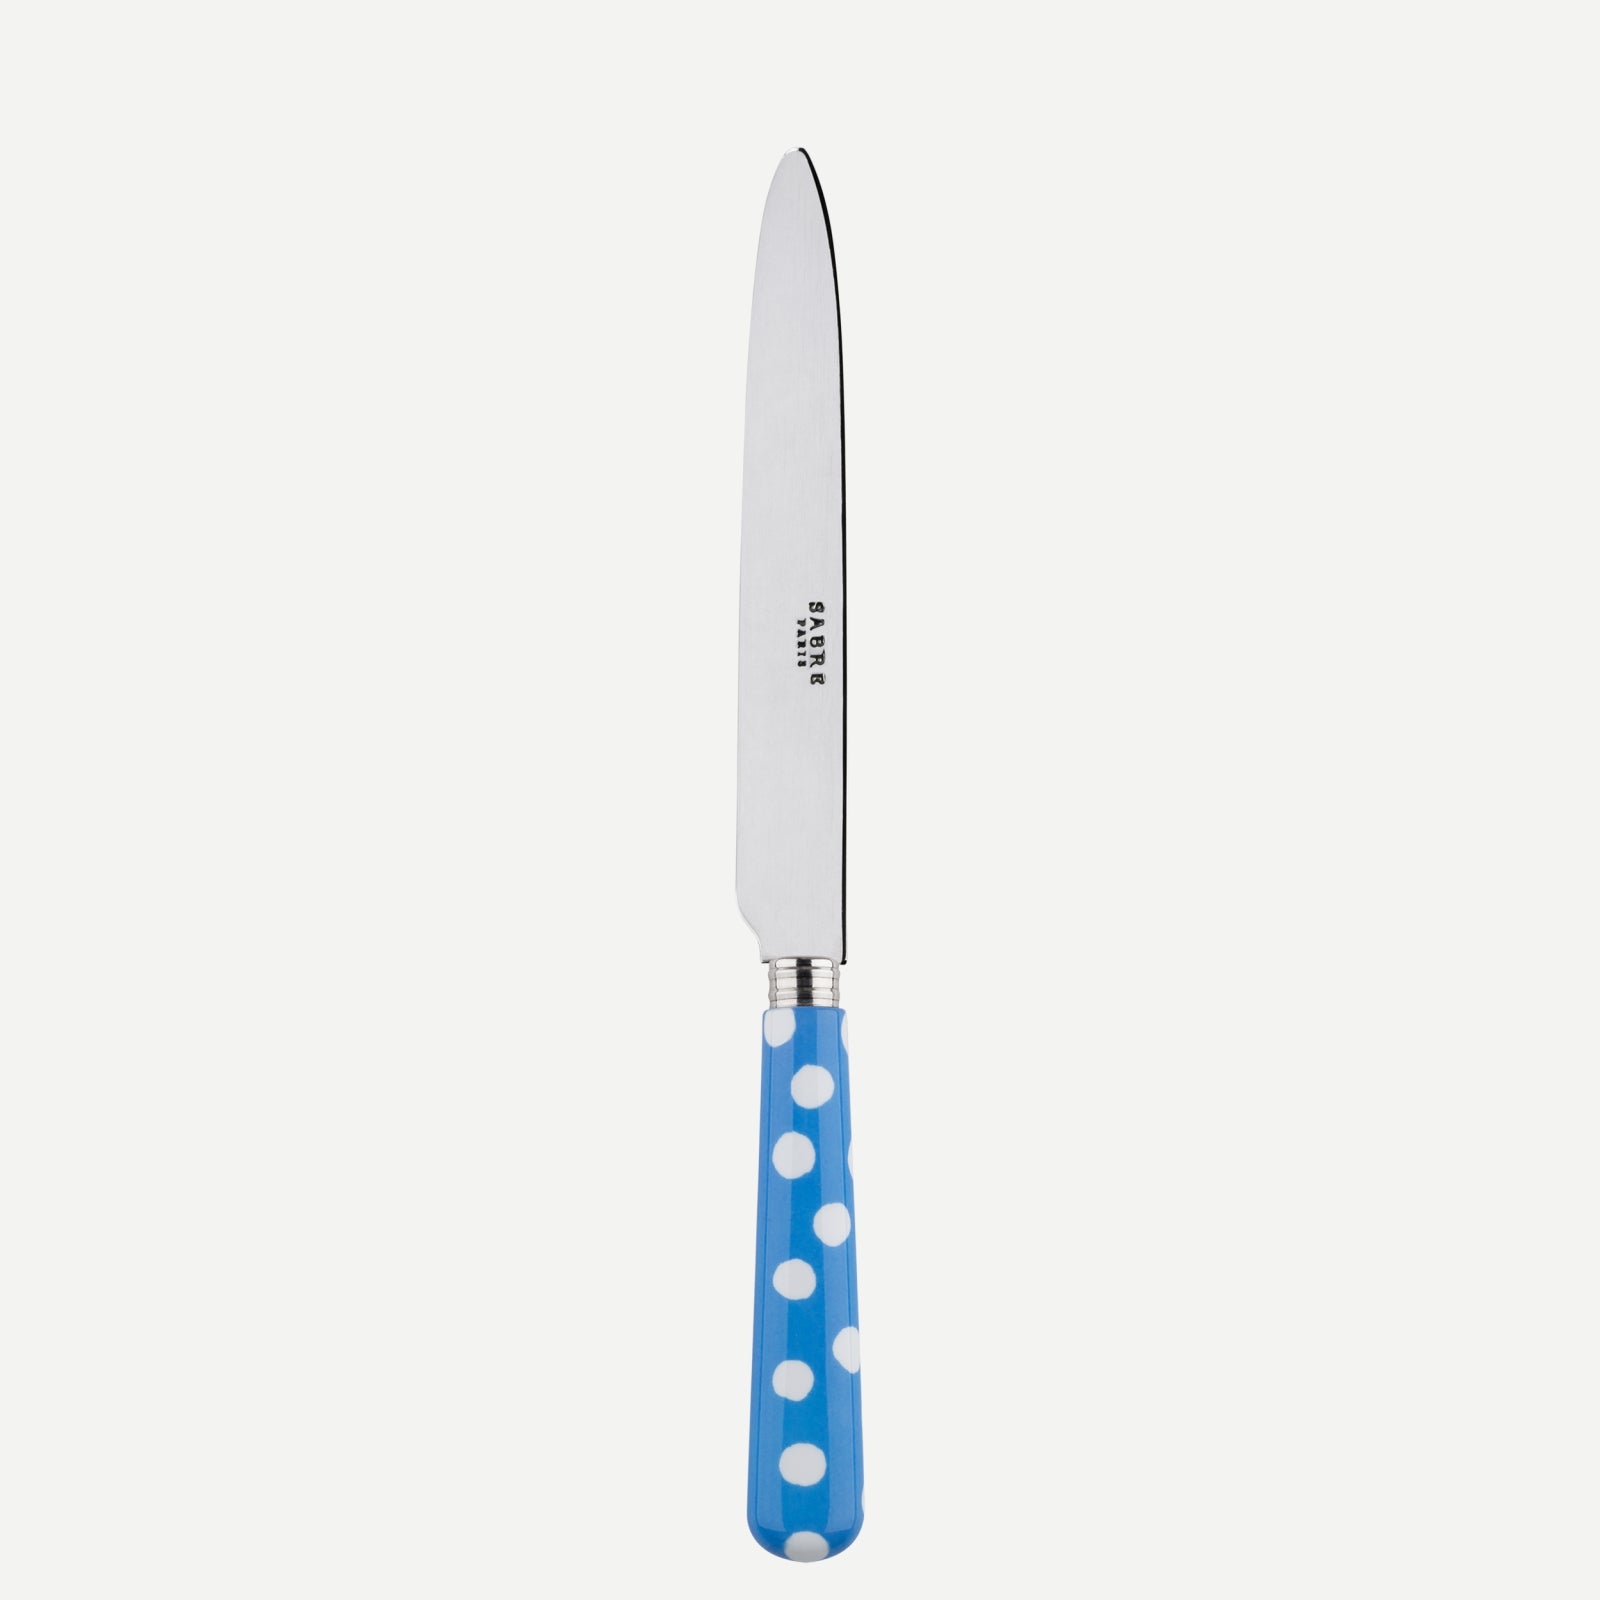 Dinner knife - White Dots. - Light blue